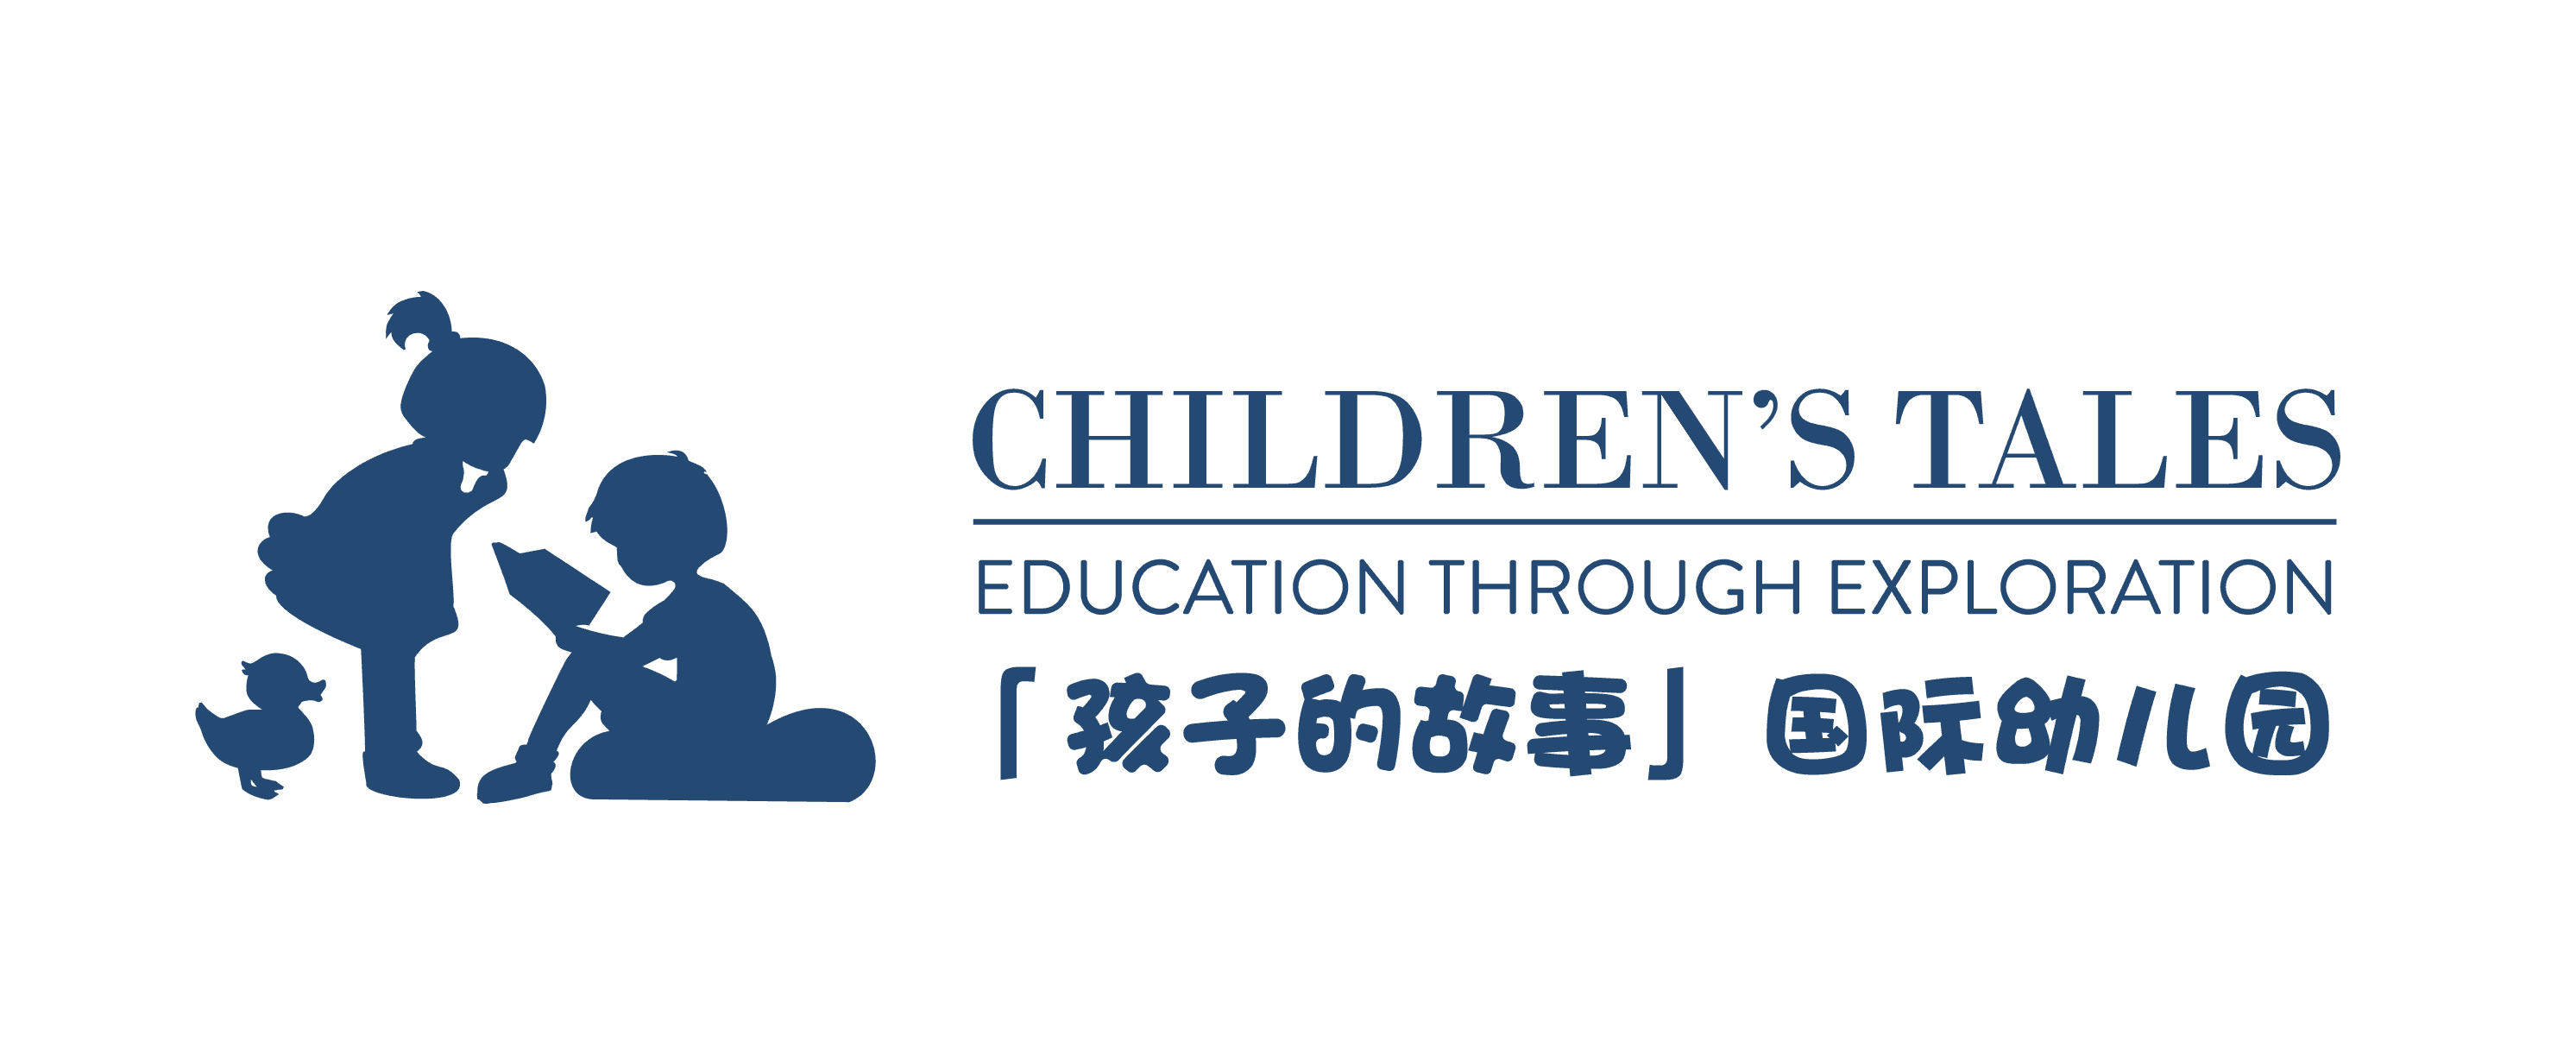 Children’s Tales International Kindergarten image